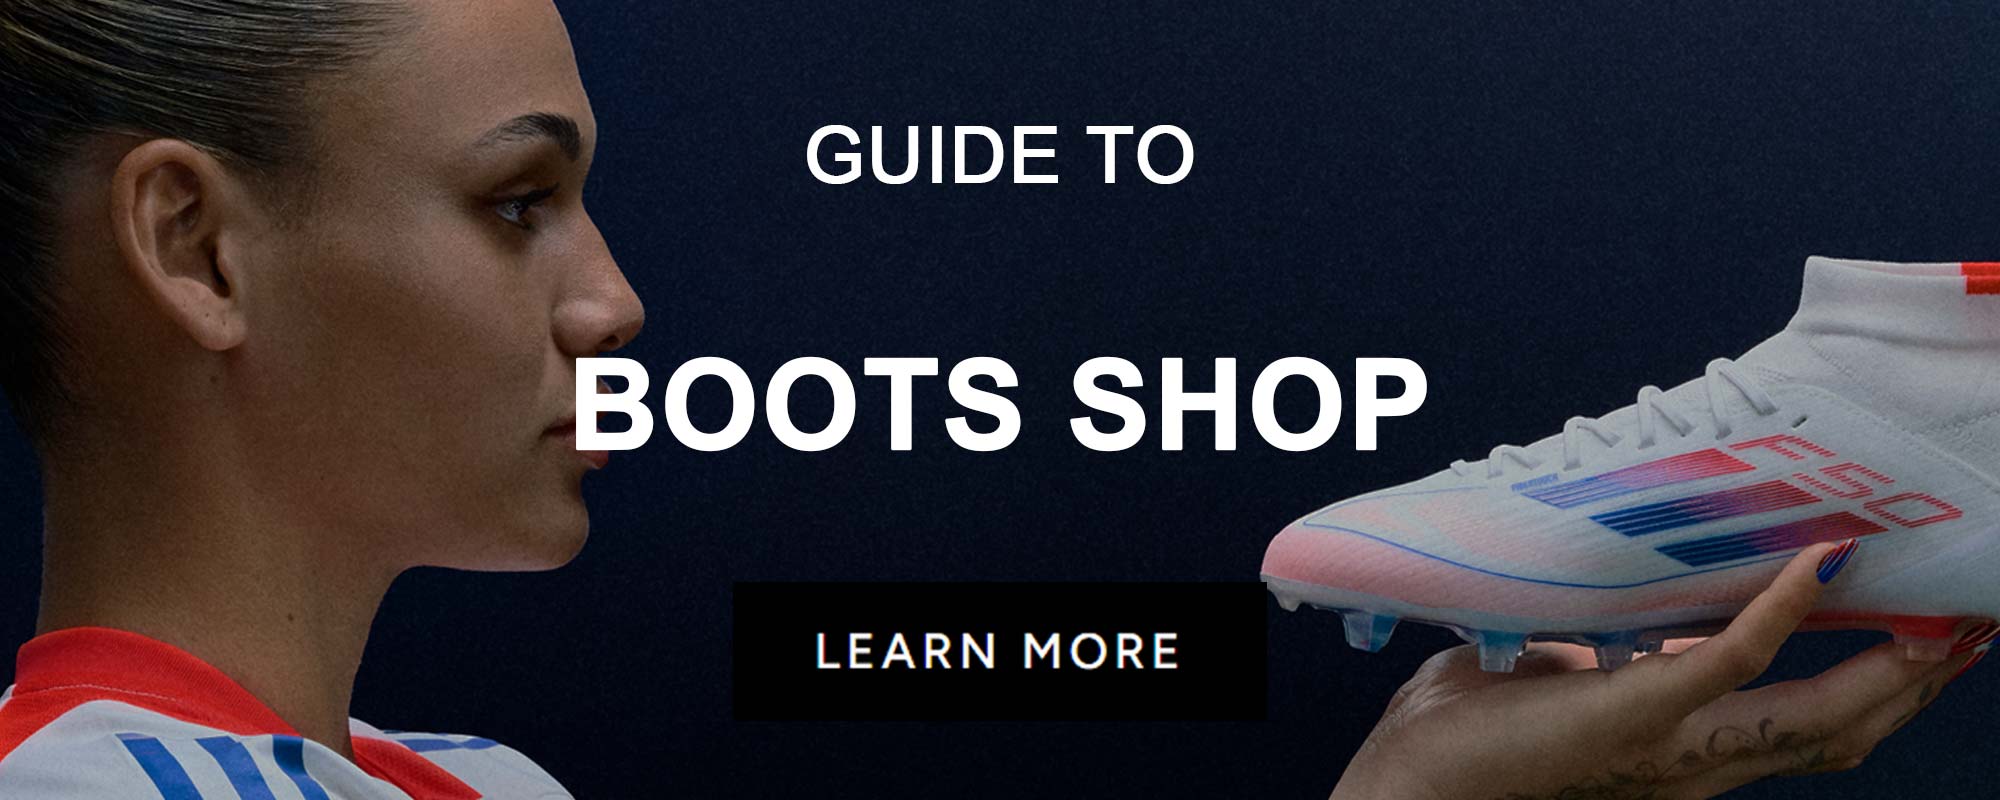 GUIDES_FOOTWEAR_BootShop.jpg